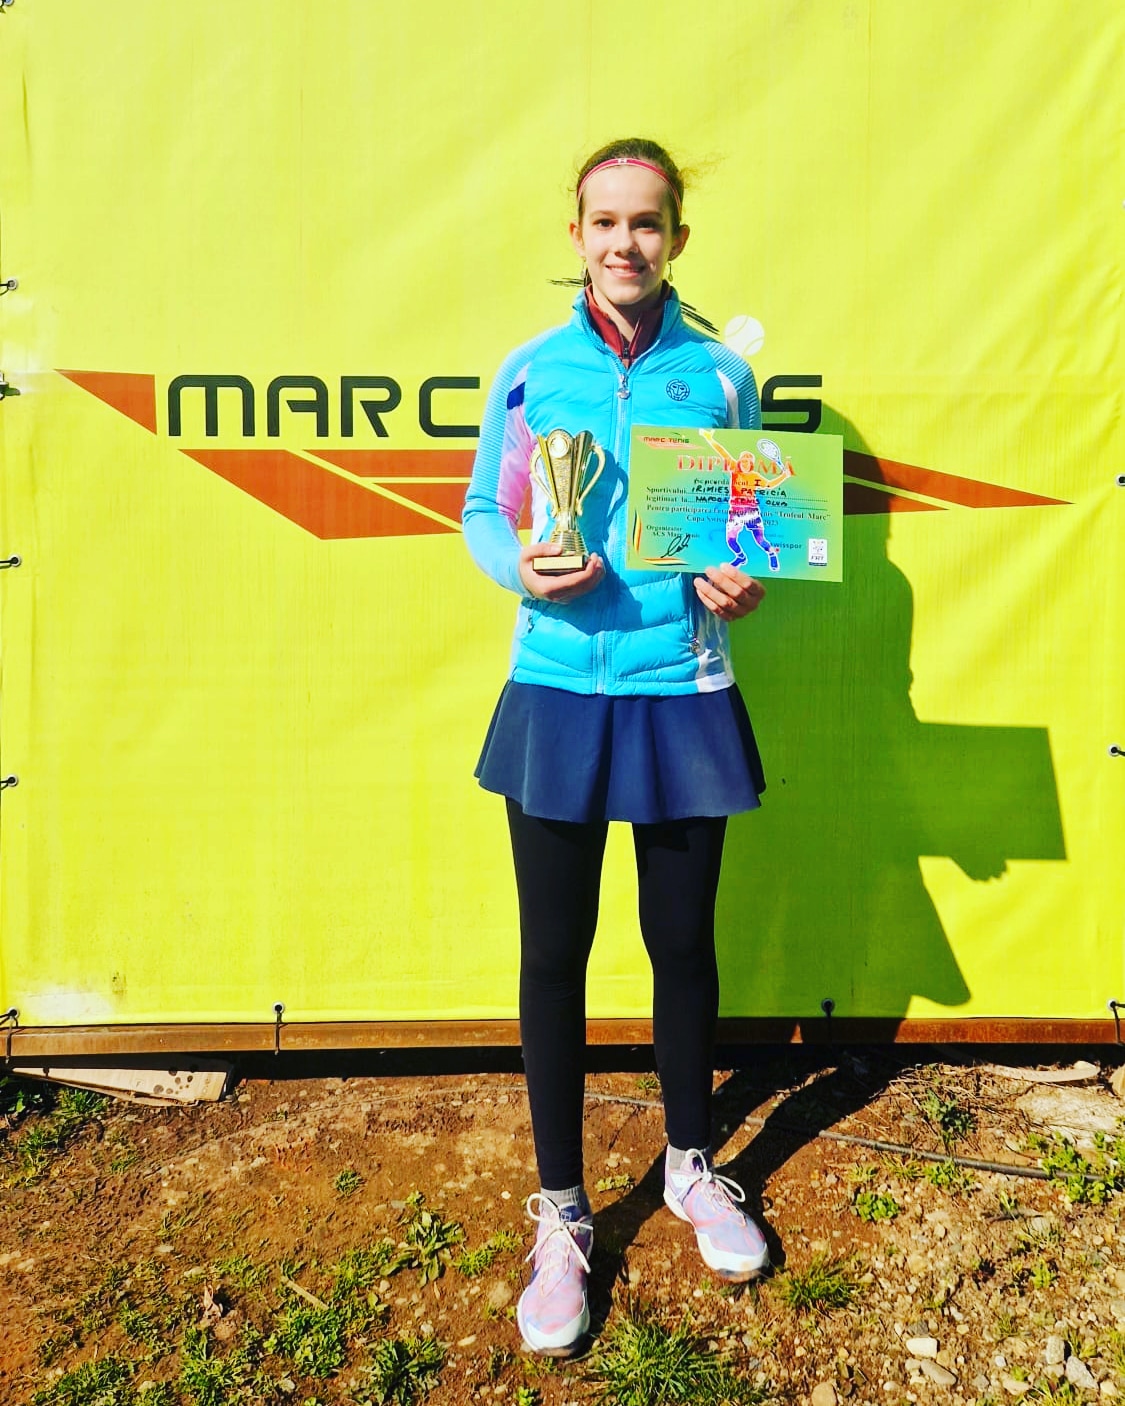 Patricia Irimieș cu diploma și trofeul locului I obținut la turneul Marc - Cupa Swisspor. Foto arhivă personală